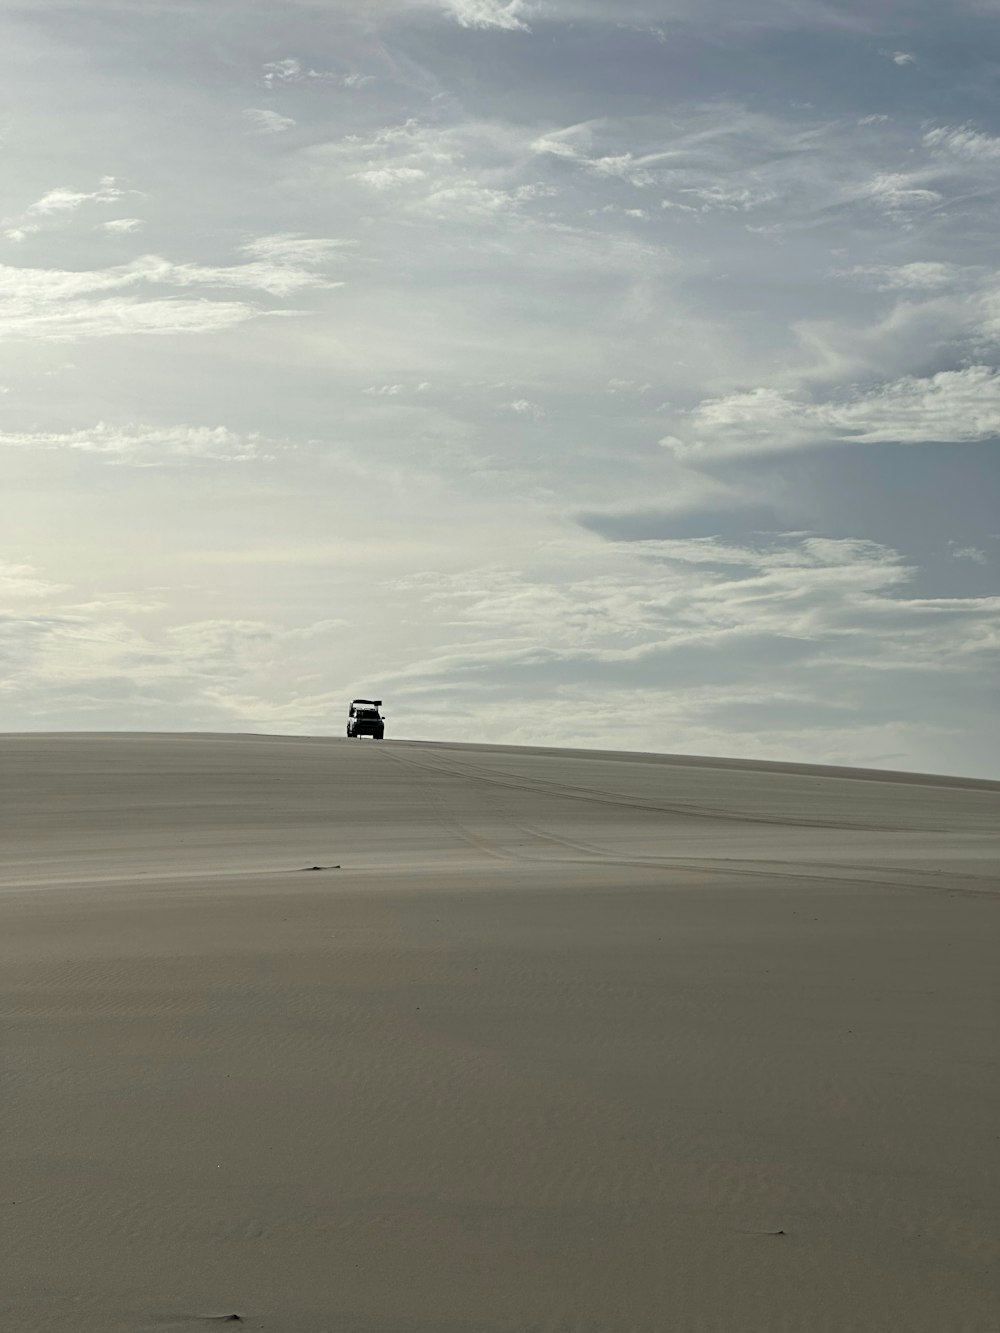 um caminhão atravessando um campo de areia sob um céu nublado